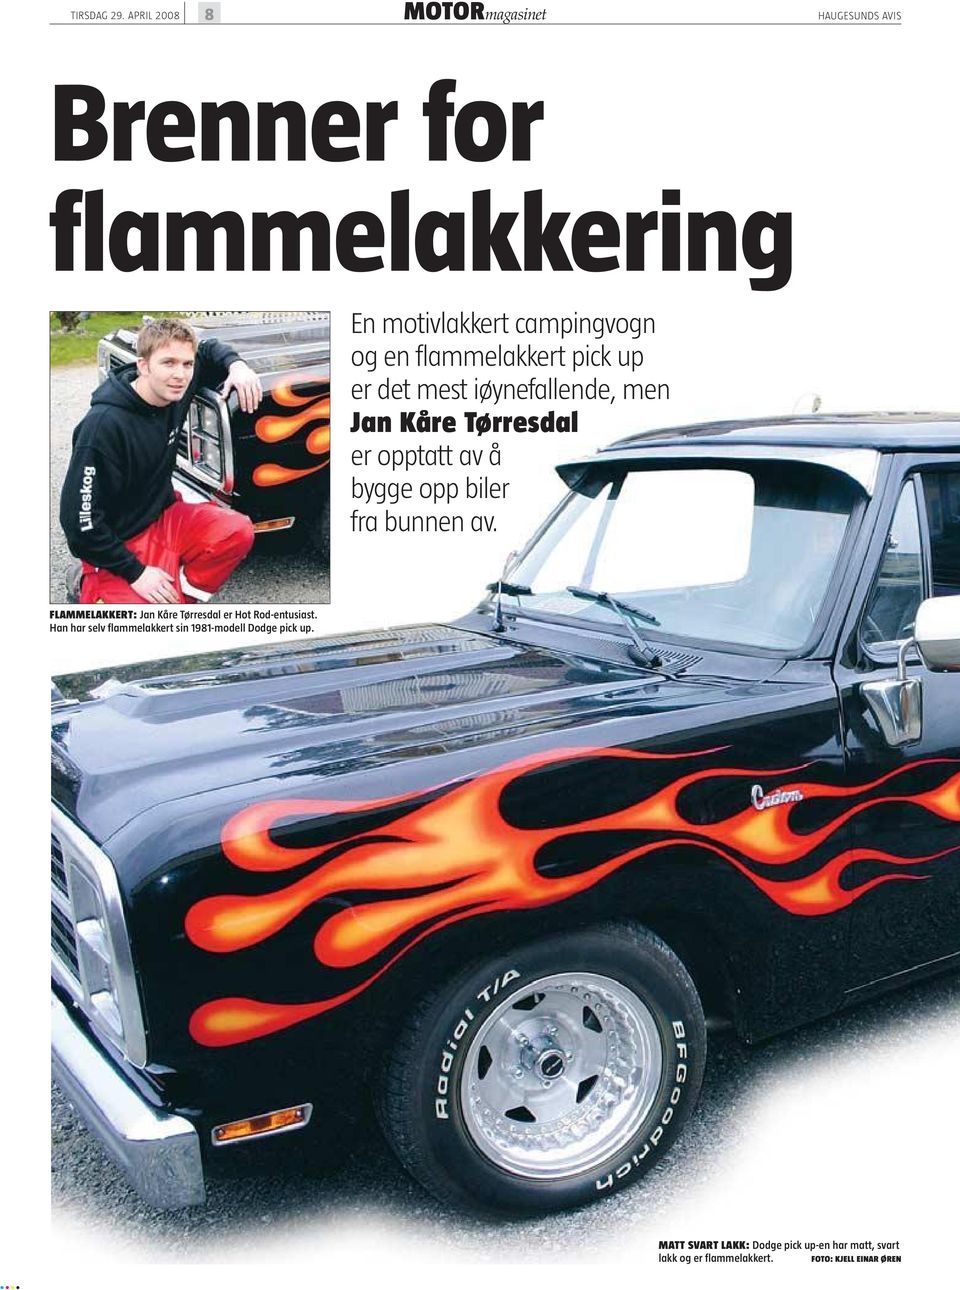 flammelakkert pick up er det mest iøynefallende, men Jan Kåre Tørresdal er opptatt av å bygge opp biler fra